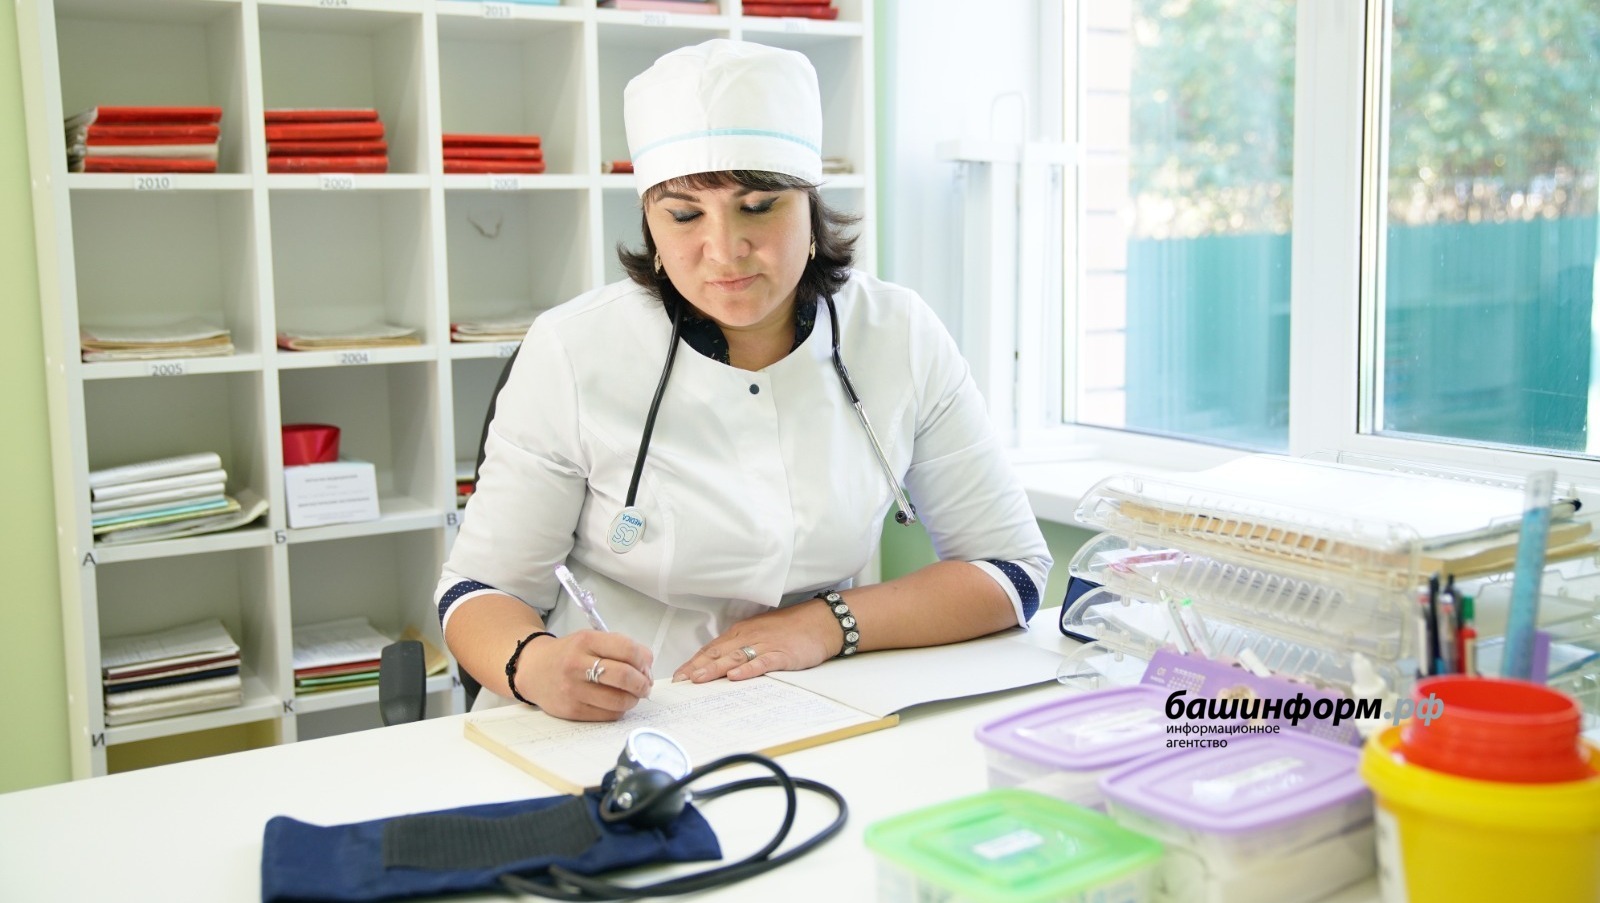 Привлечение врачей – личная задача всех глав районных администраций Башкирии